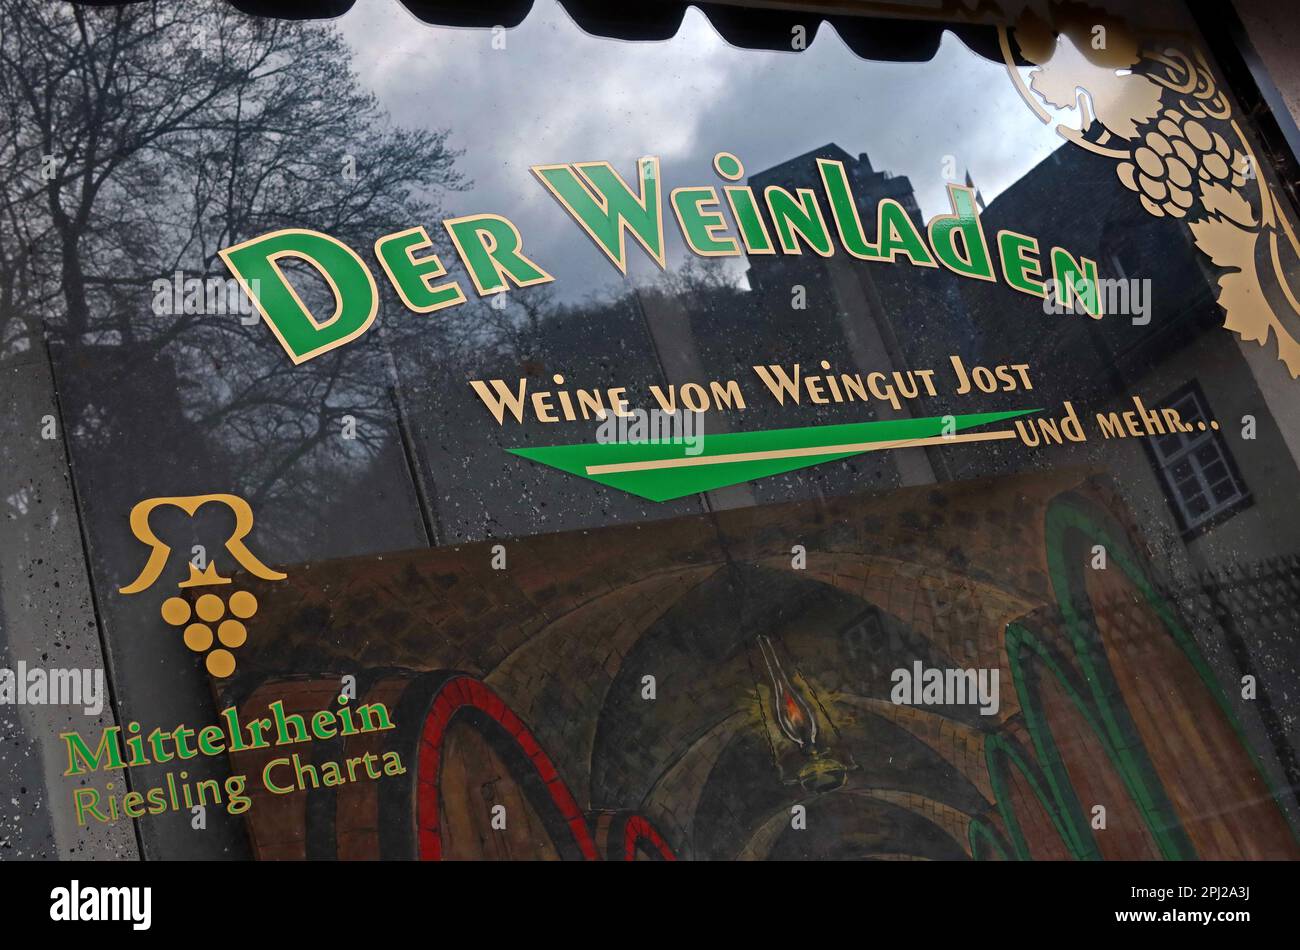 Der WeinLaden Mittelrhein Riesling Charta shop, Bacharach (Bacharach am Rhein), ????, district de Mainz-Bingen, Allemagne Banque D'Images